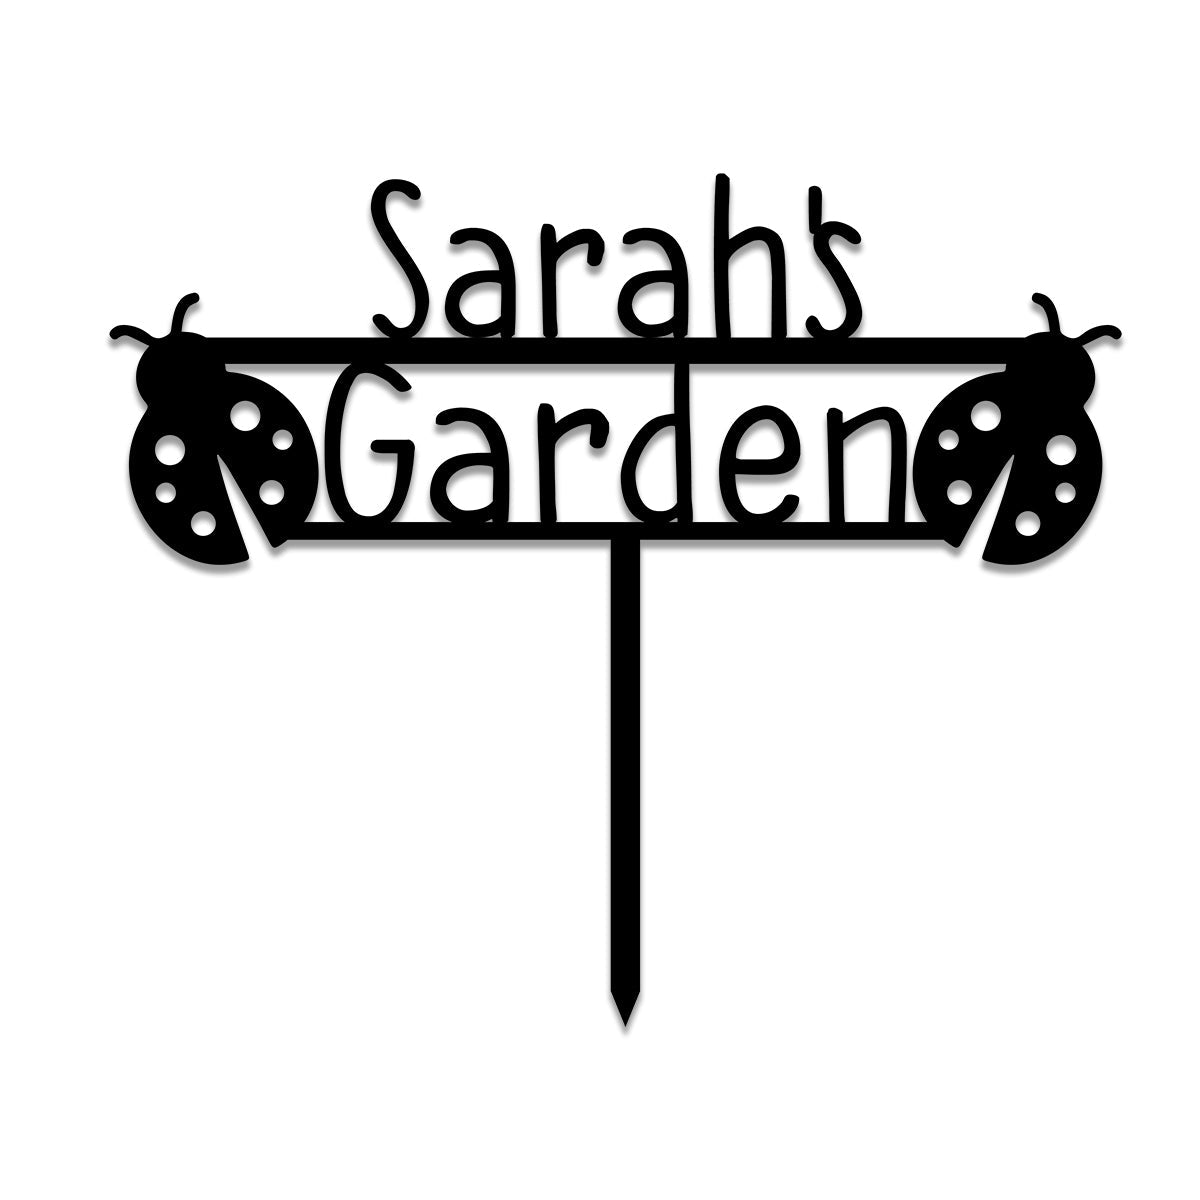 Ladybug Metal Garden Sign, Custom Garden Stake, Home Decor, Wedding Art Gift For Her, Gardening Lovers